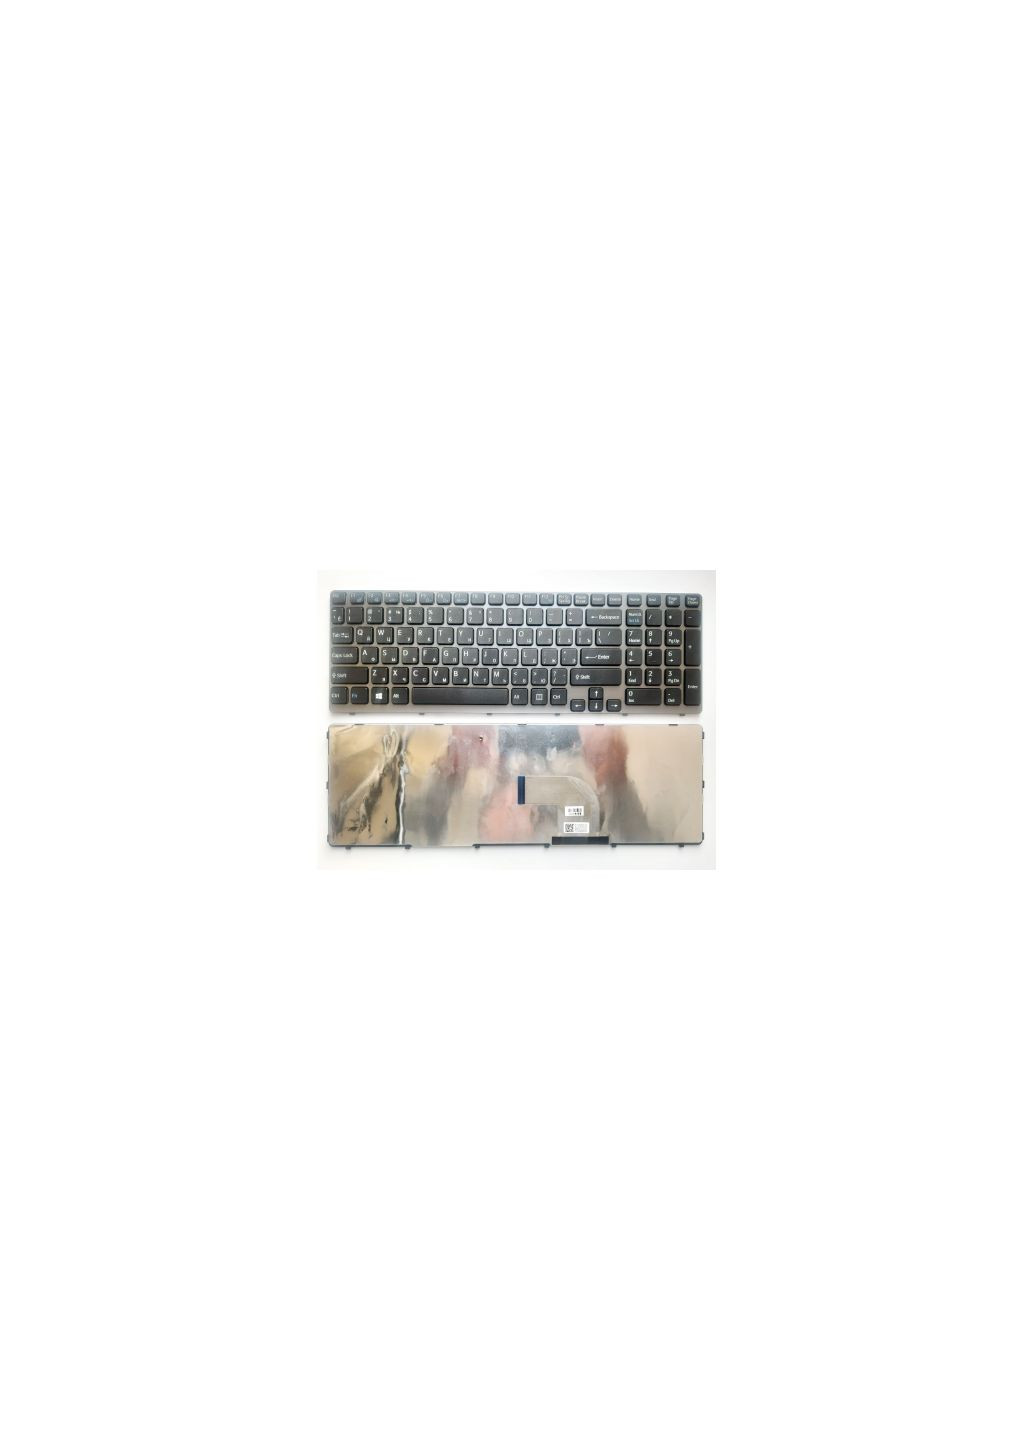 Клавиатура для ноутбука (A43539) Sony sve15 (e15 series) черная с серой рамкой ua (276707388)